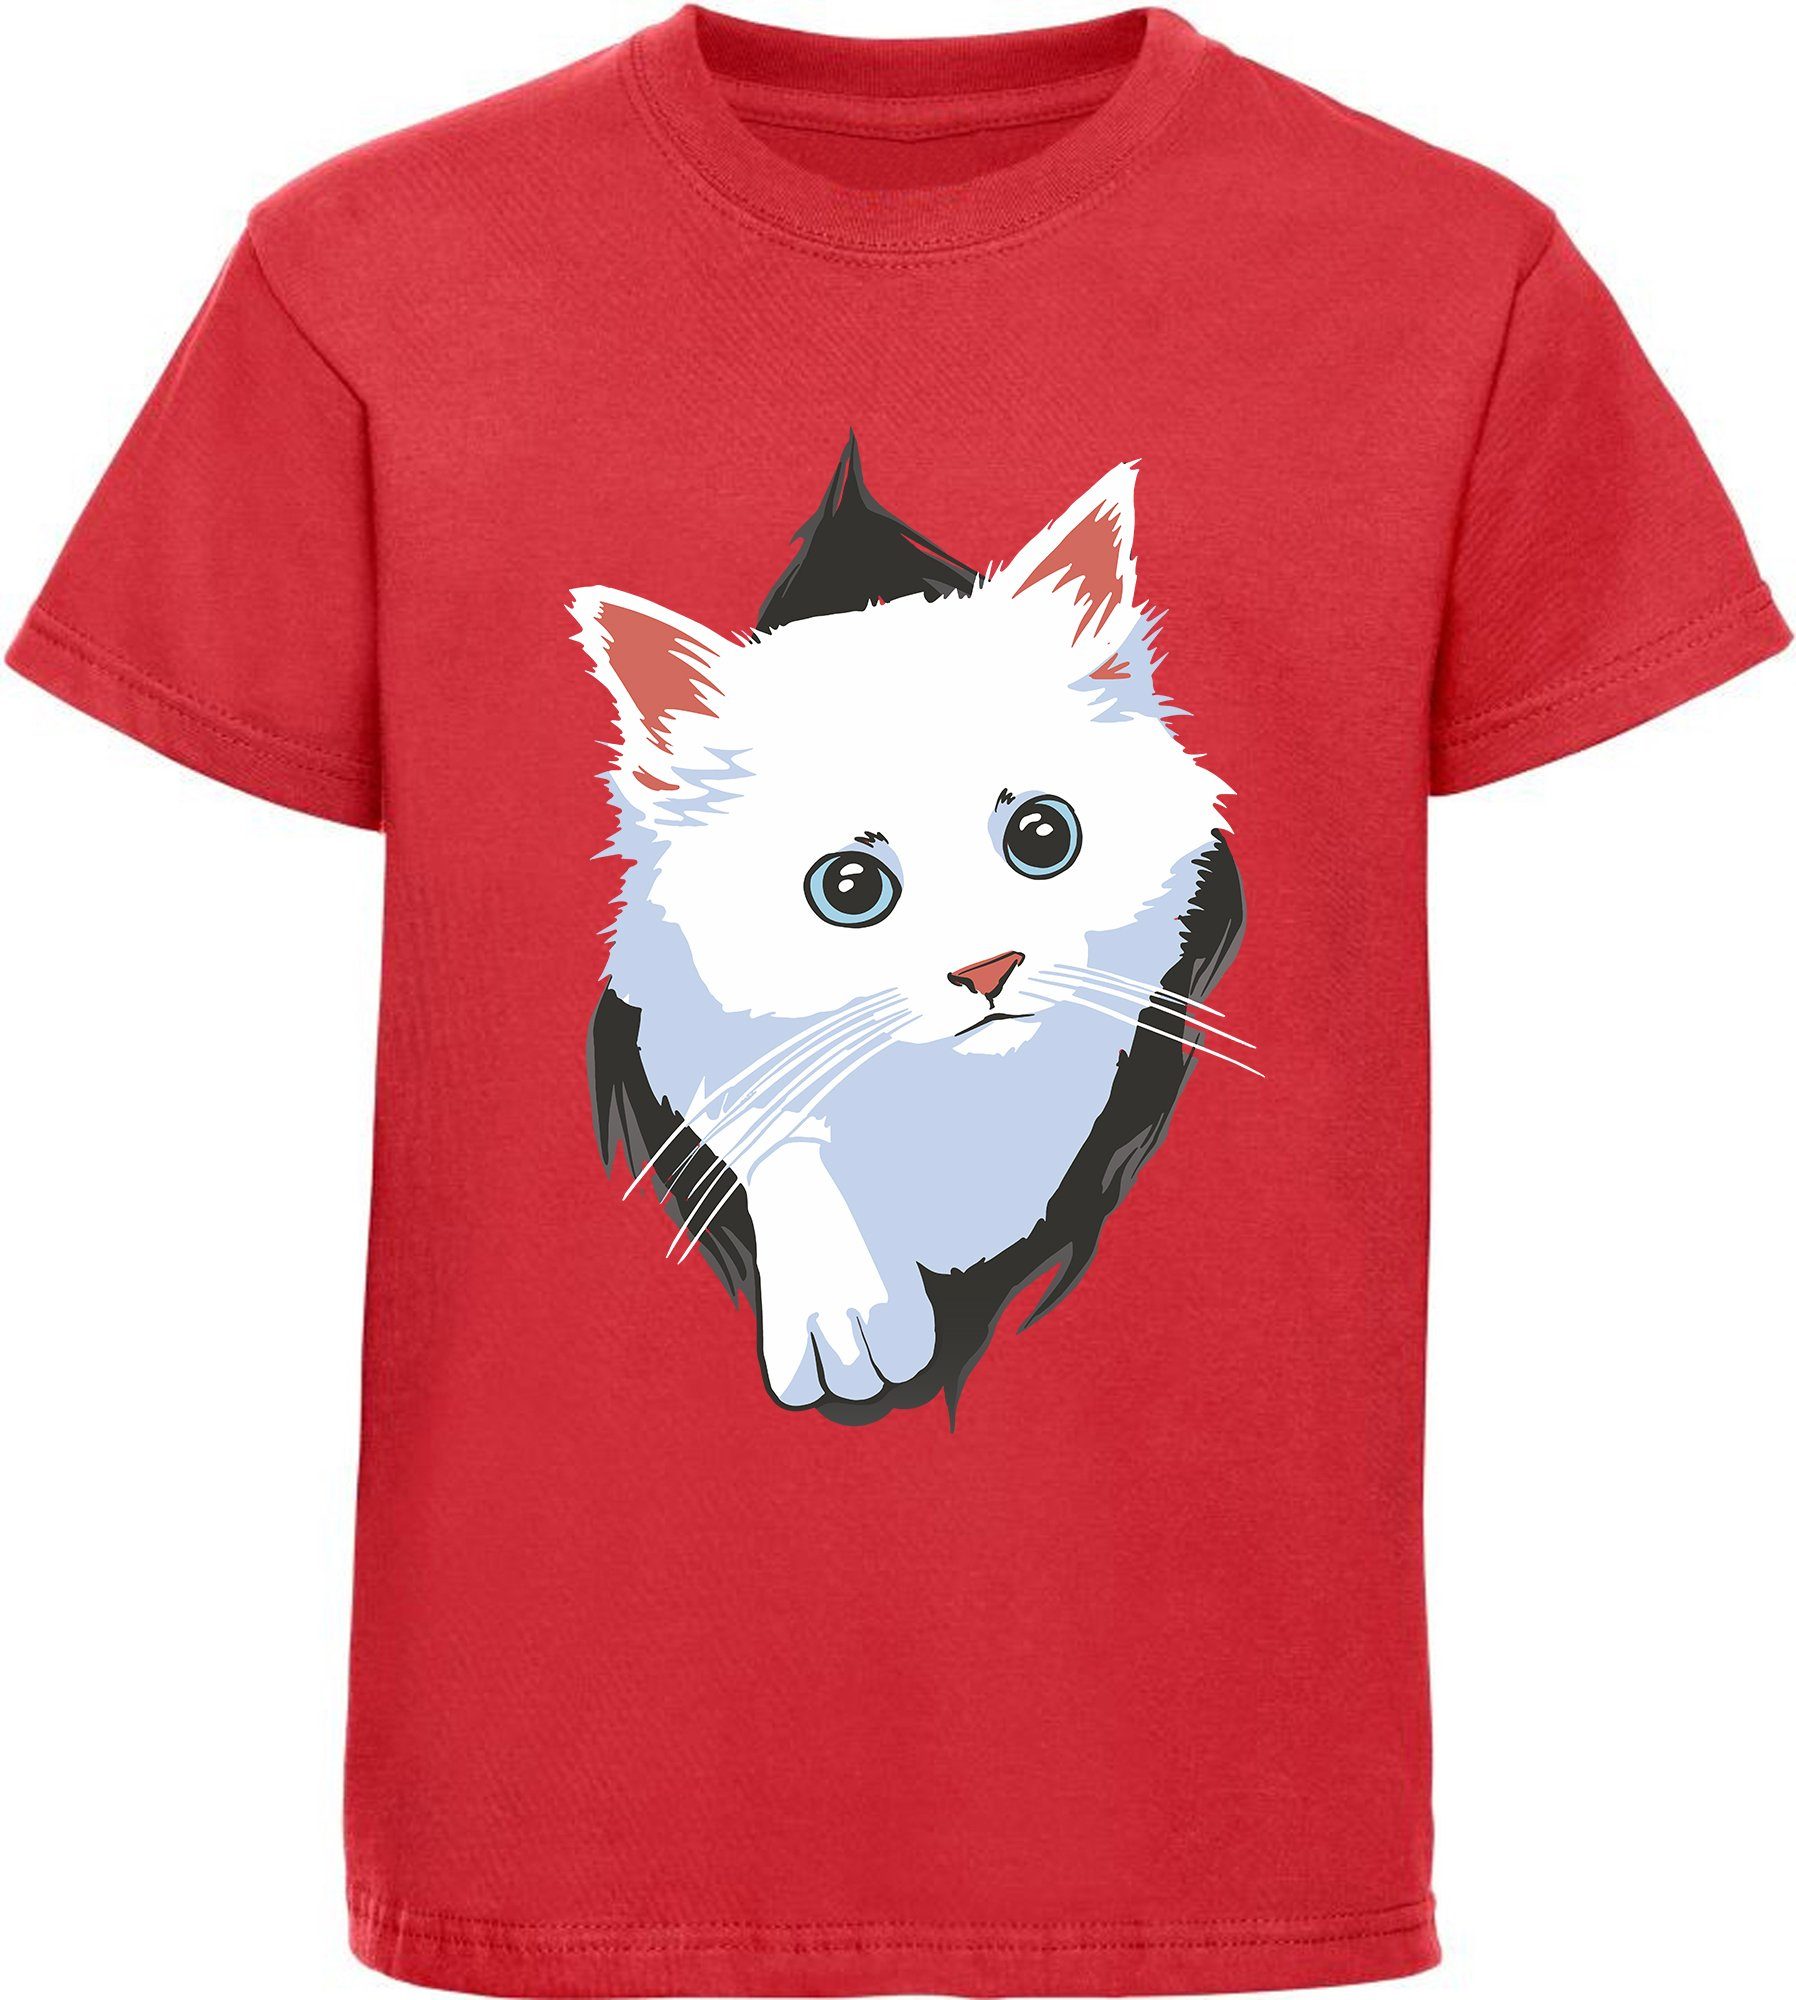 MyDesign24 Print-Shirt bedrucktes Mädchen Katzen T-Shirt - weiße Katze aus dem Shirt Baumwollshirt mit Aufdruck, schwarz, rot, weiß, rosa, i113